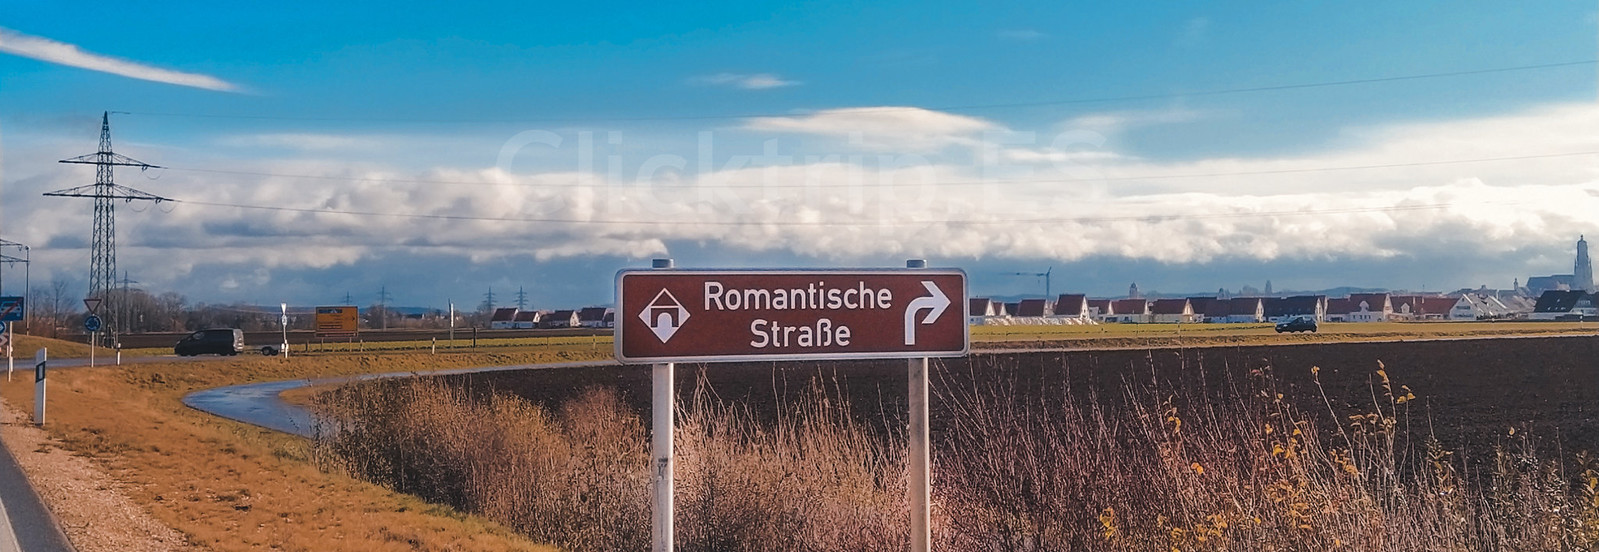 Ruta Romántica de Alemania · Turismo de Alemania